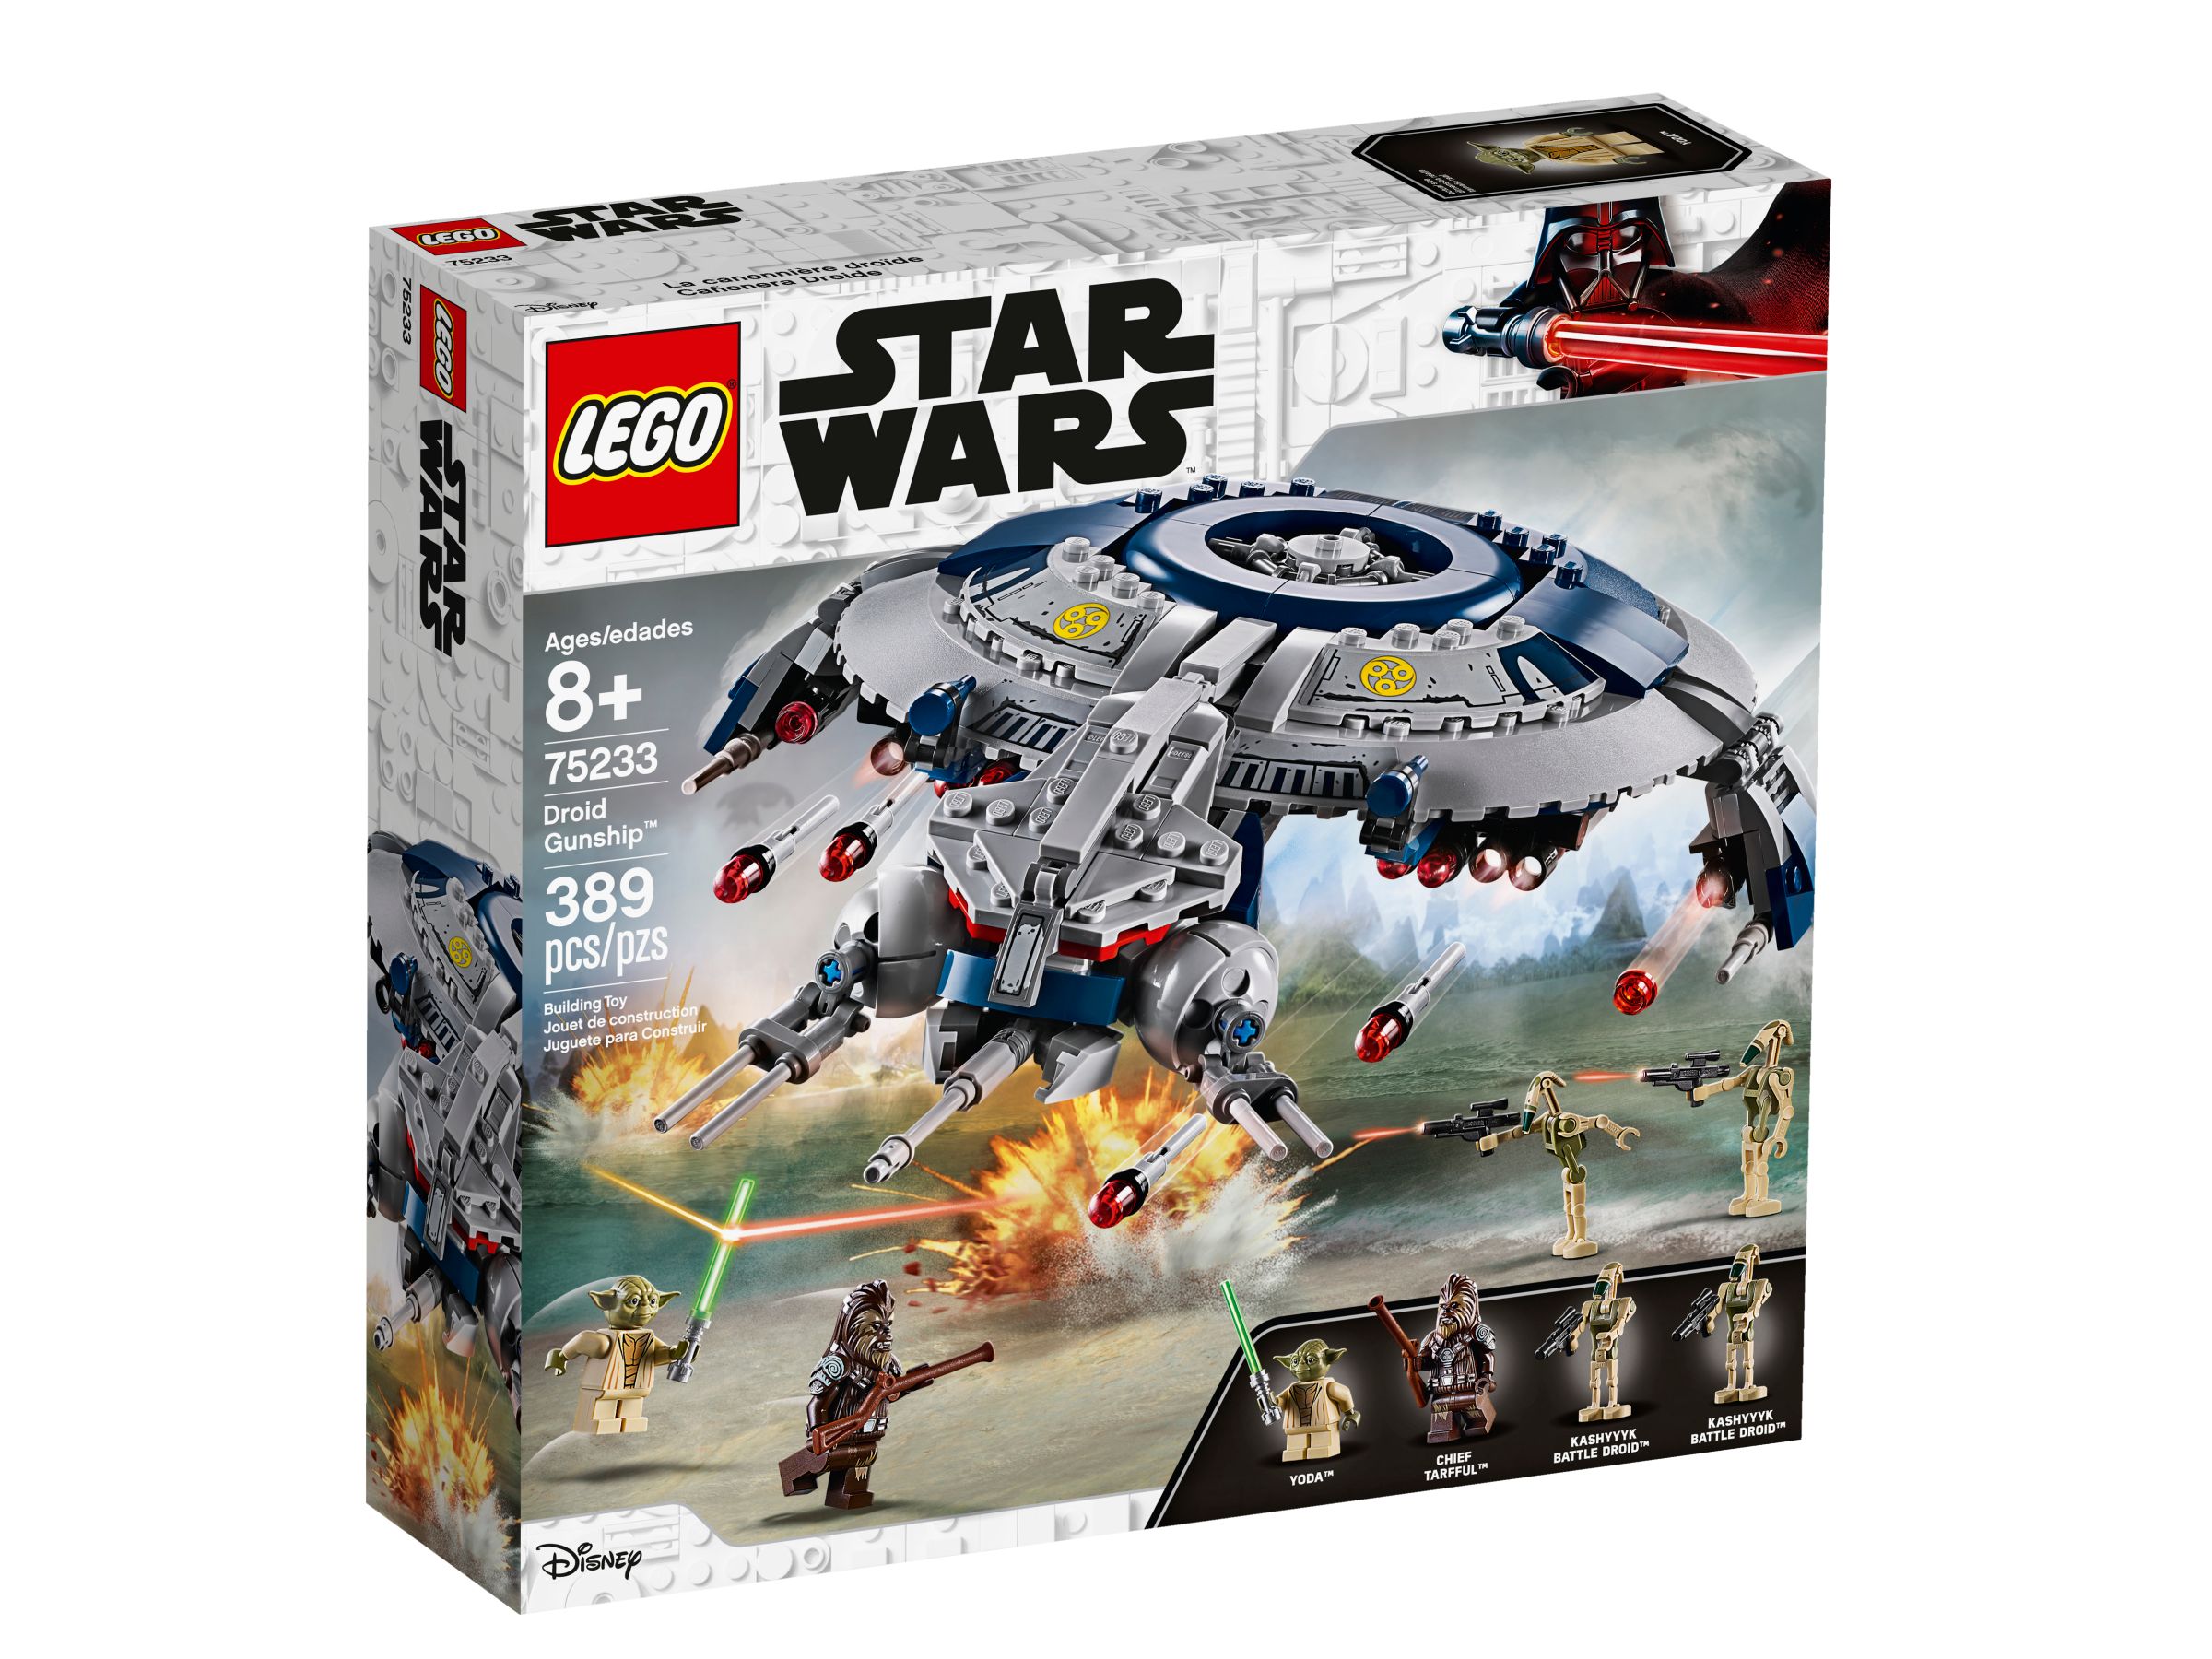 LEGO Star Wars 75233 Droid Gunship LEGO_75233_alt1.jpg